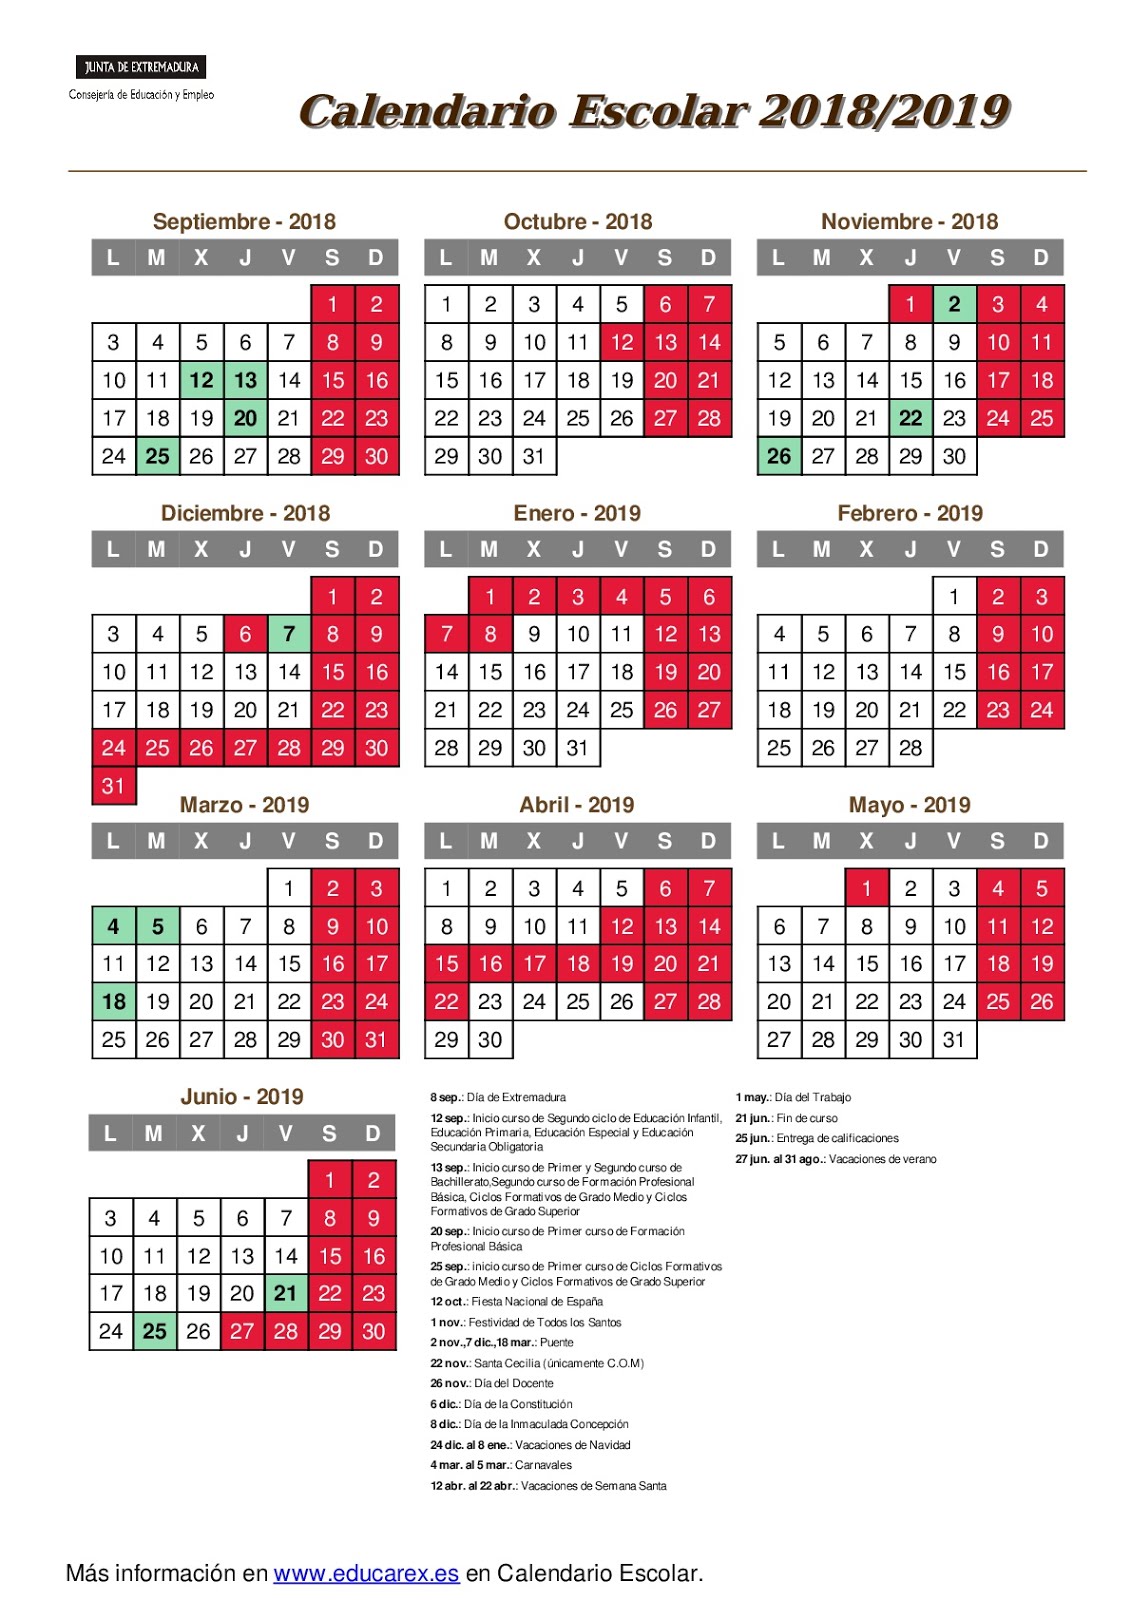 Calendario escolar 2018/19